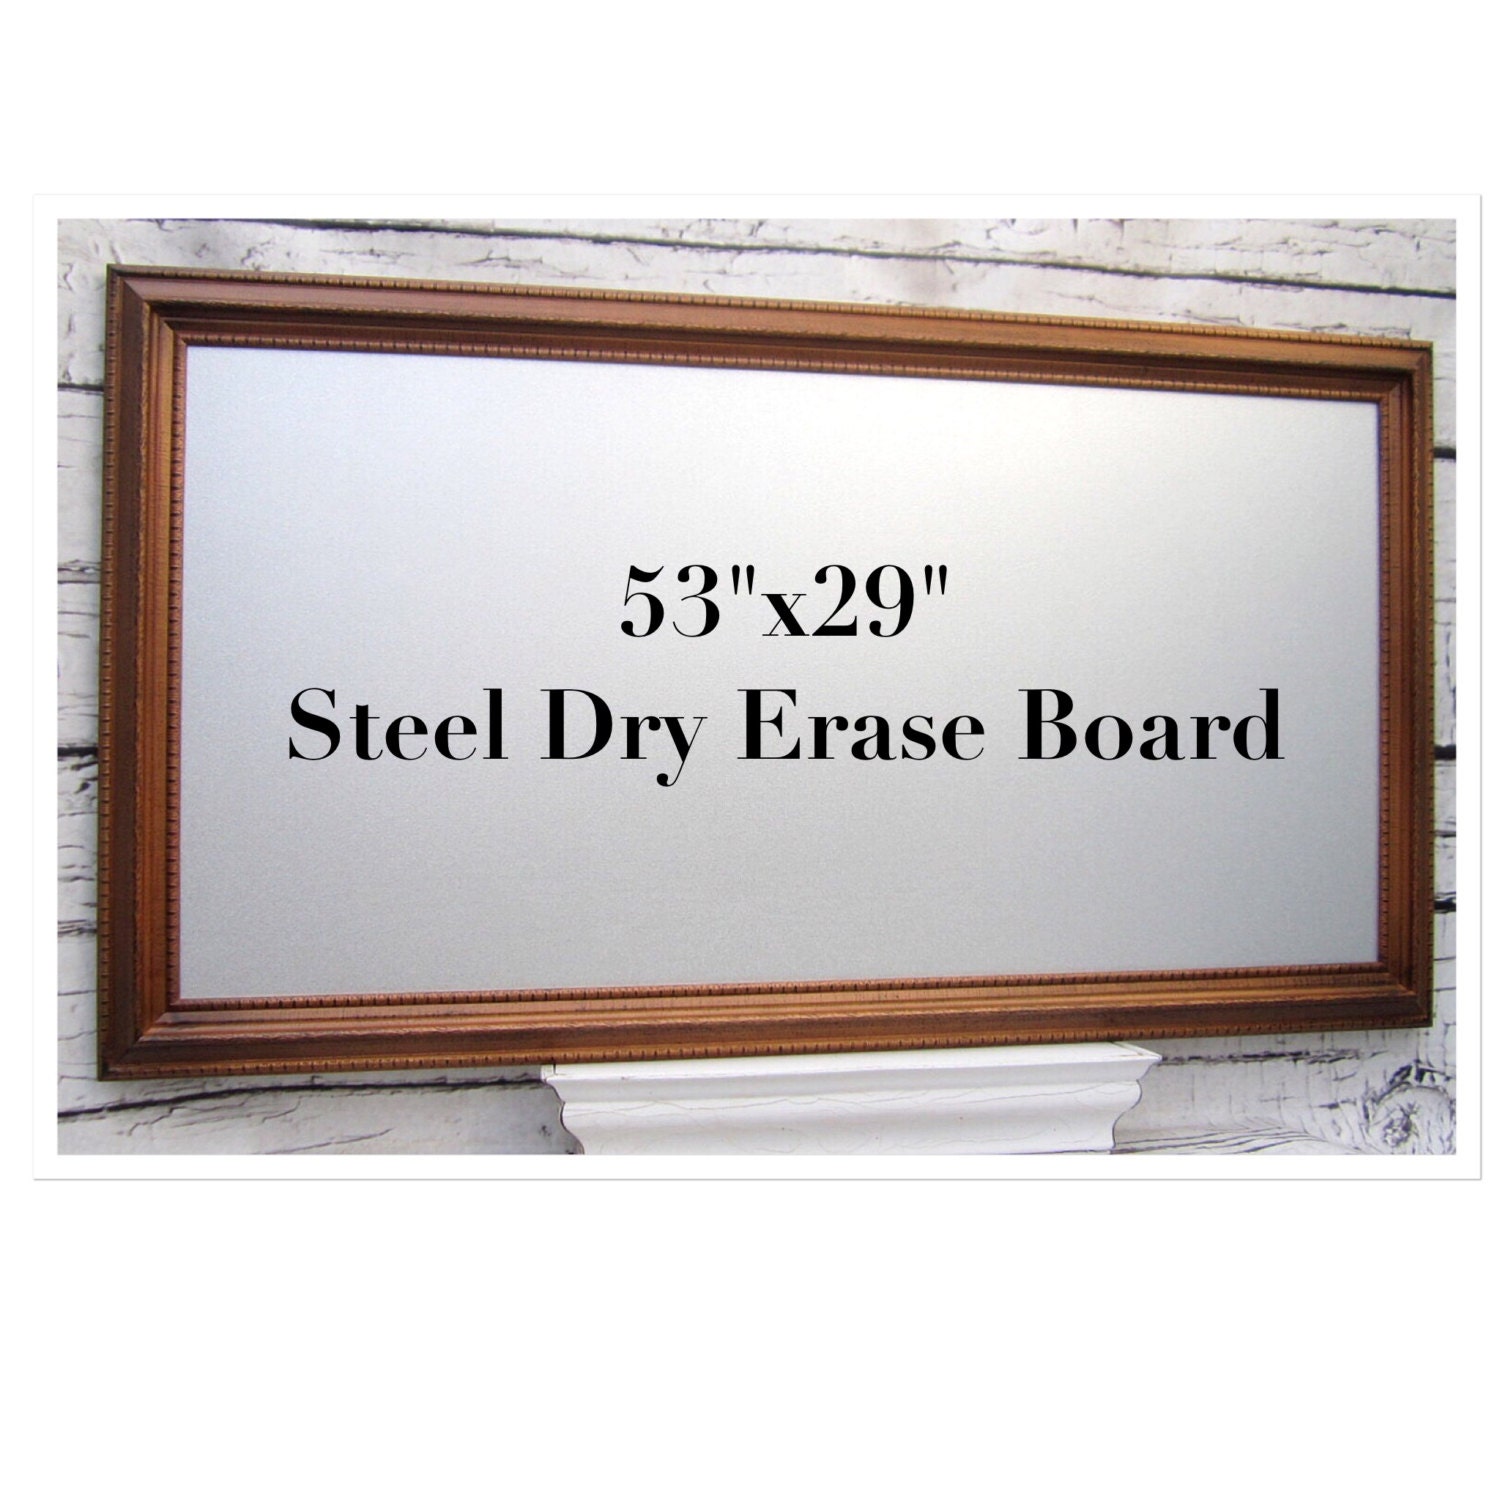 steel dry erase board